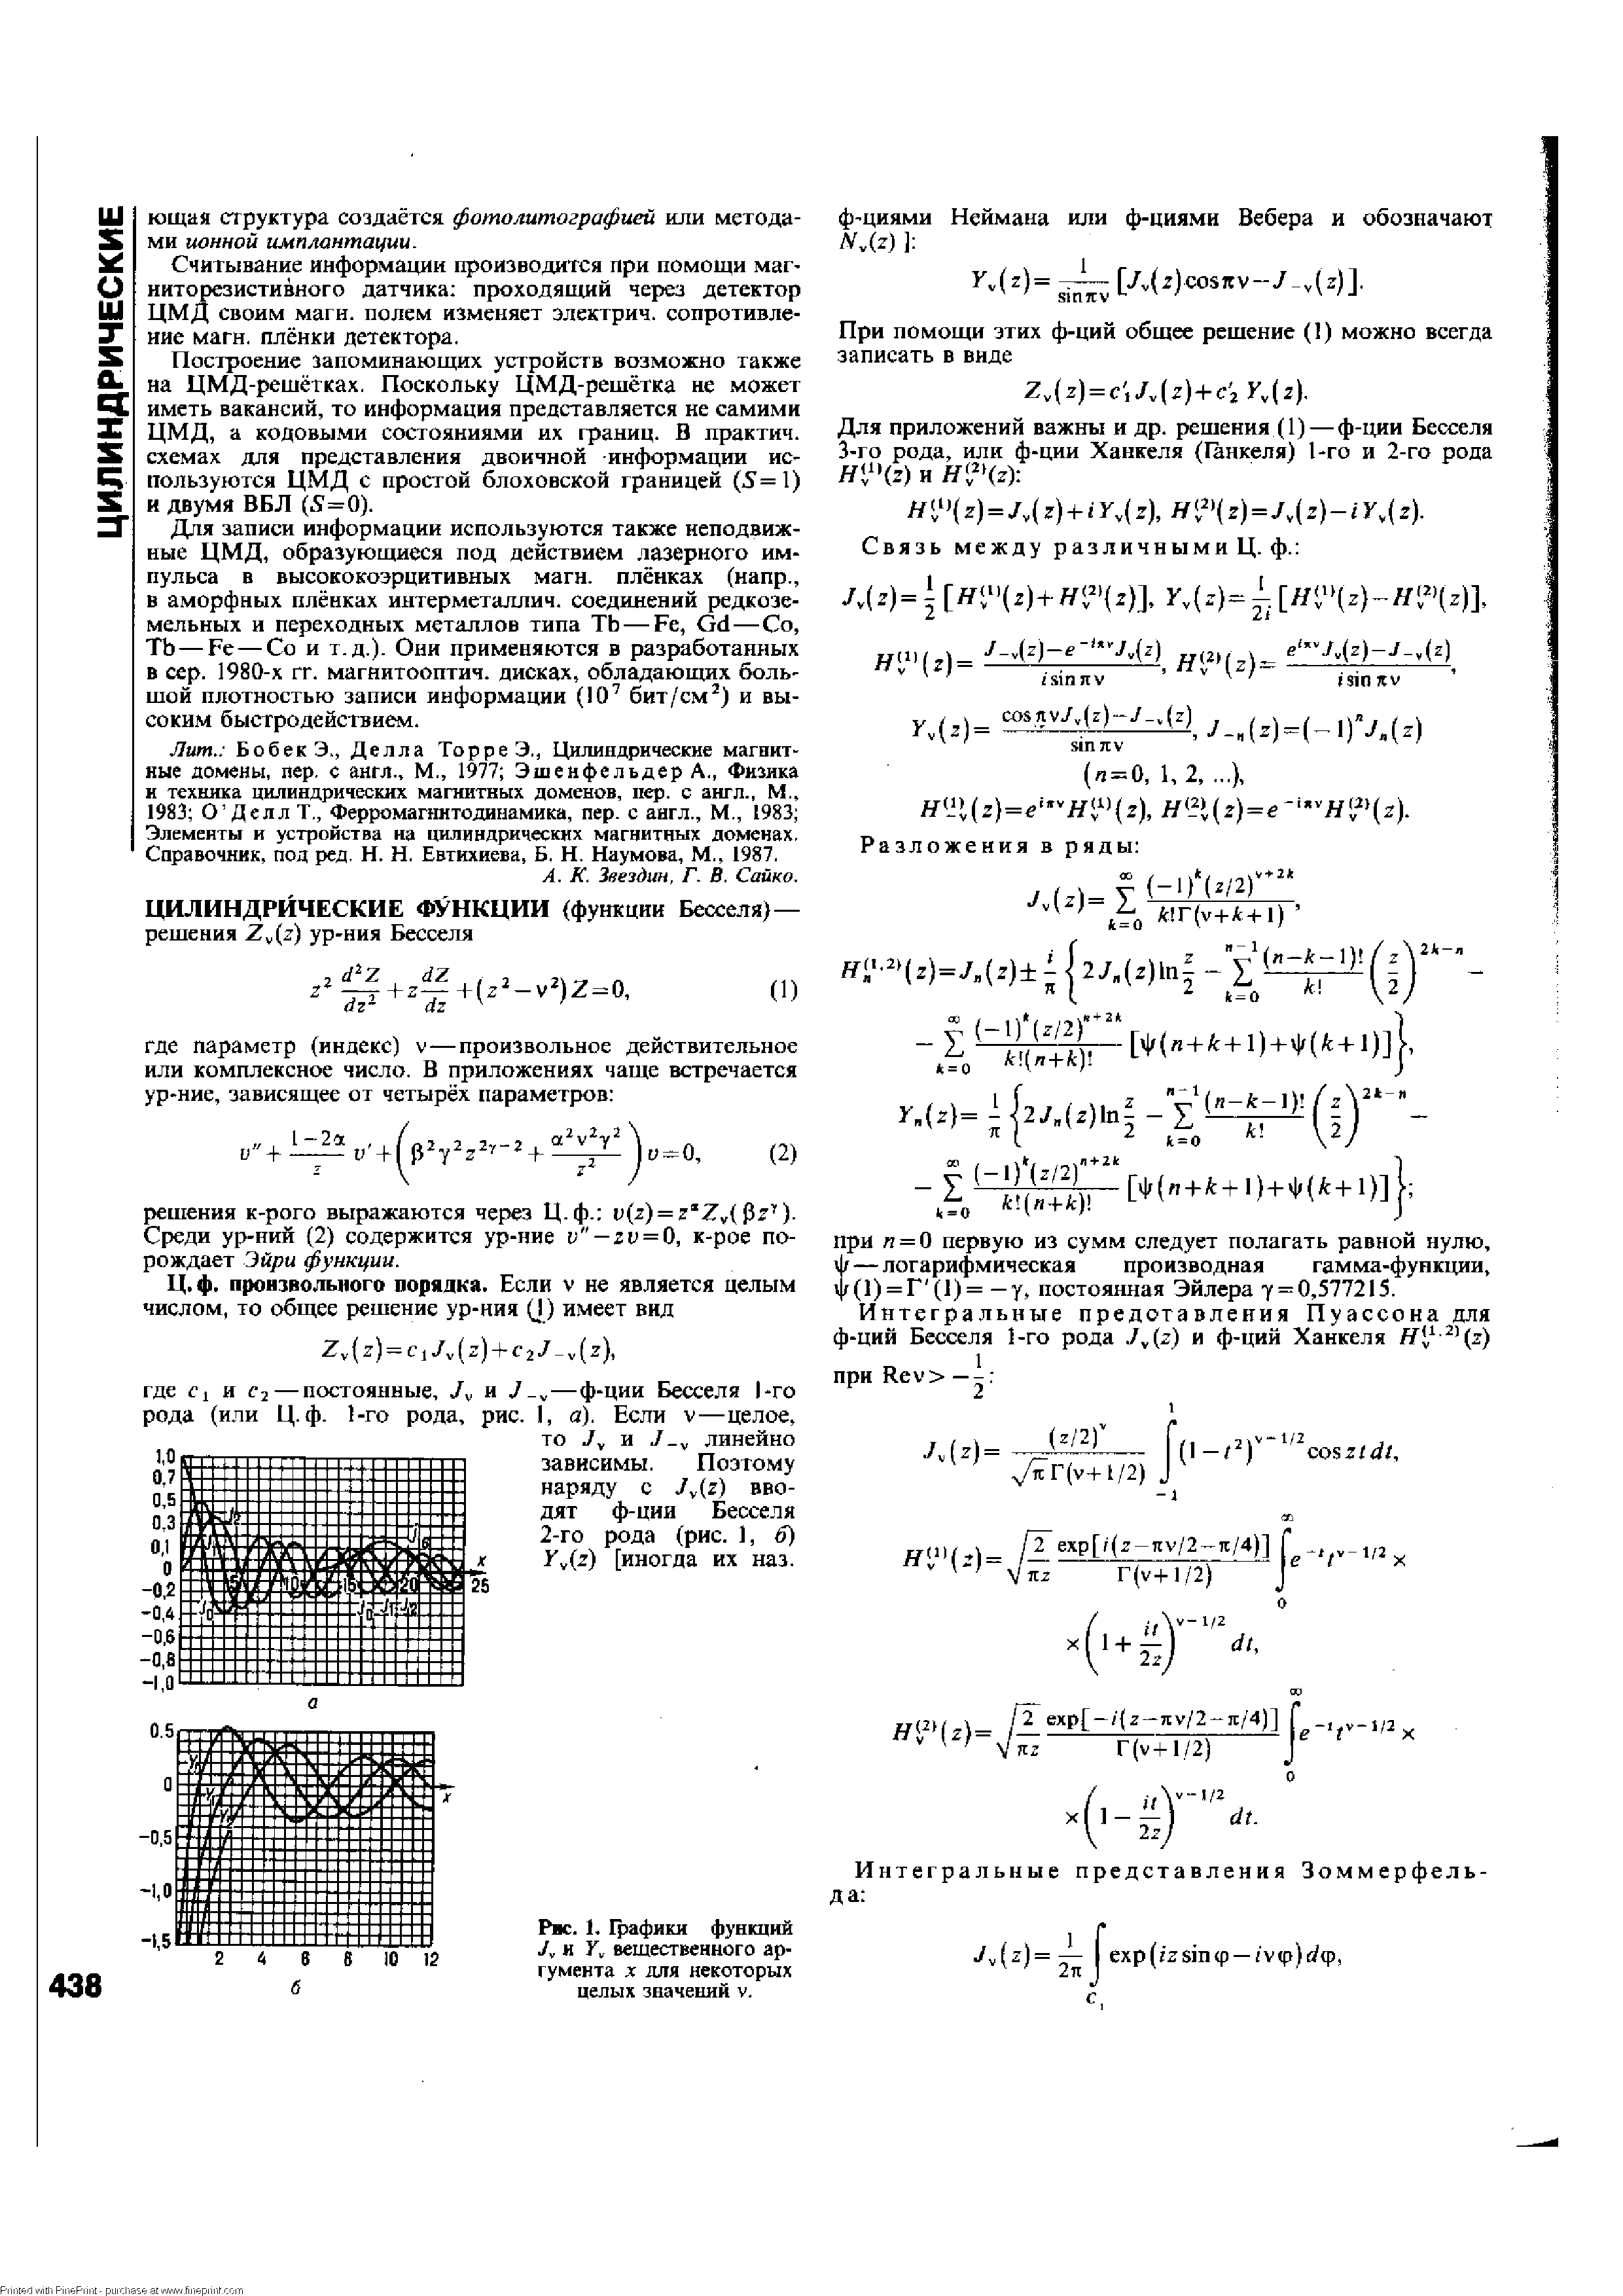 Рис. 1. Графики функций У, и вещественного аргумента X для некоторых целых значений v.
